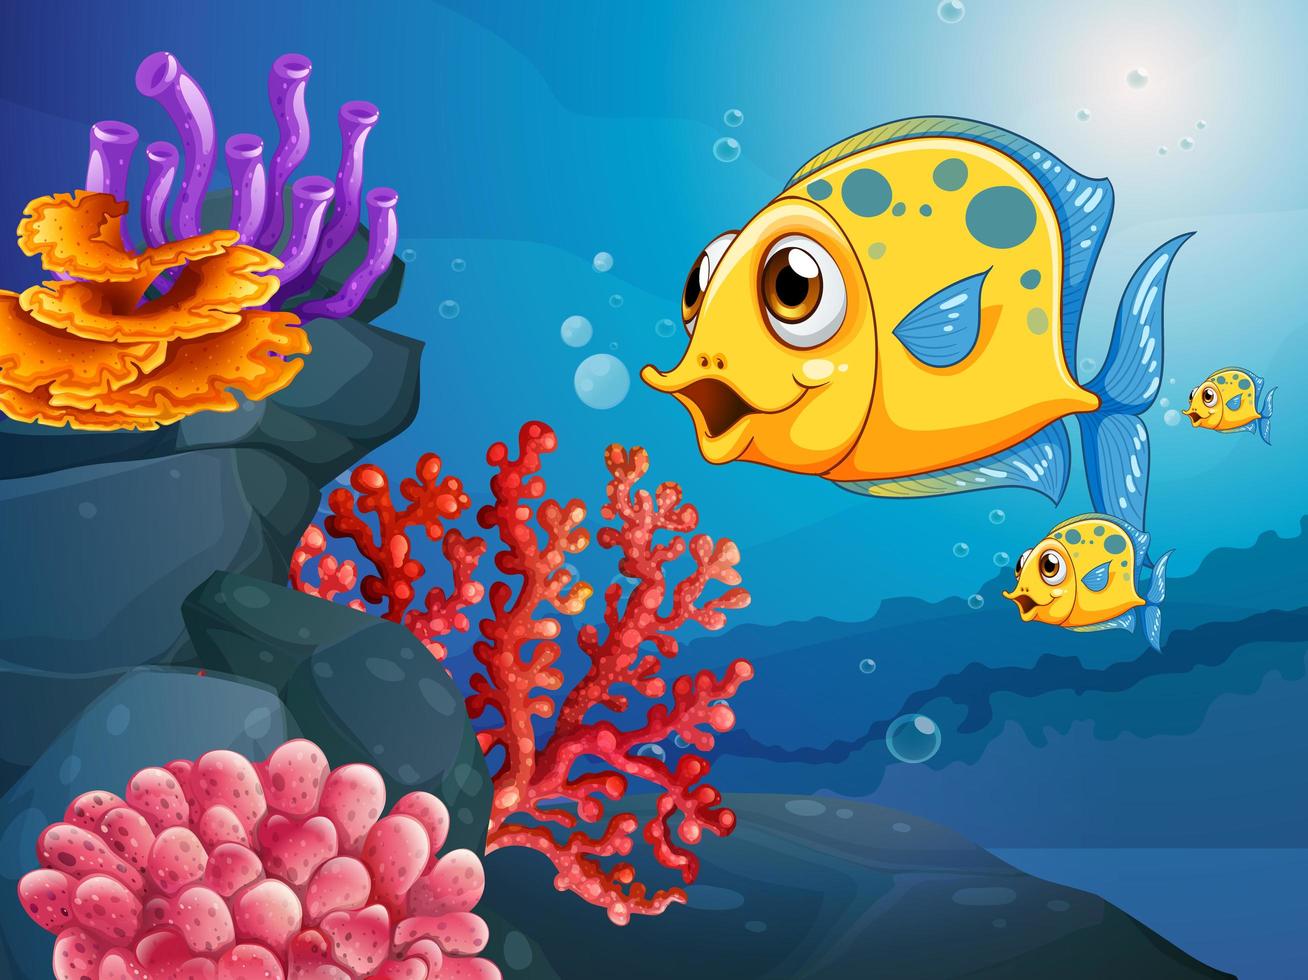 Personnage de dessin animé de nombreux poissons exotiques dans la scène sous-marine avec des coraux vecteur